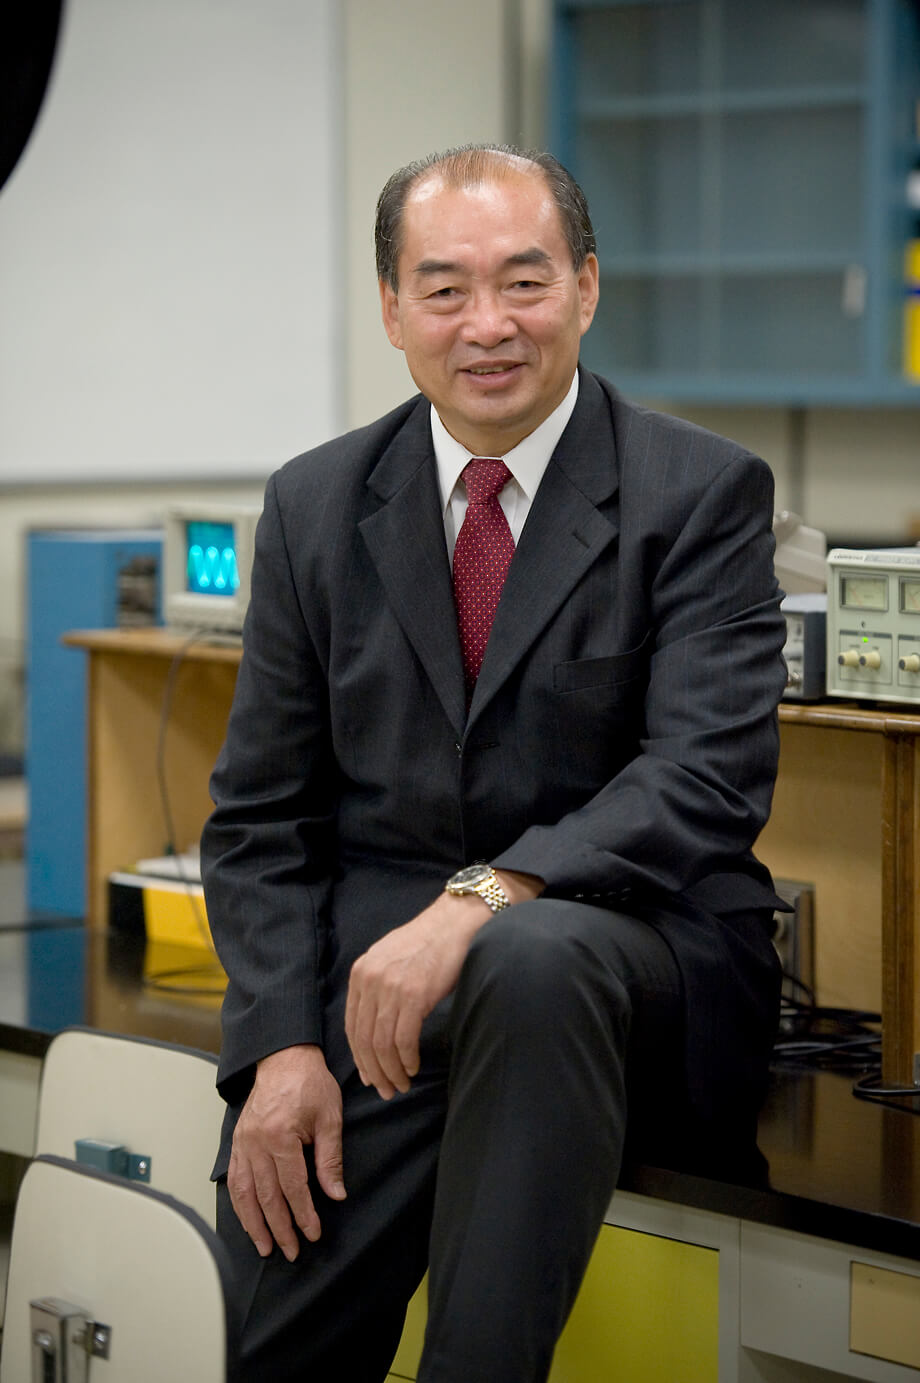 Dr. Daobin Zhang